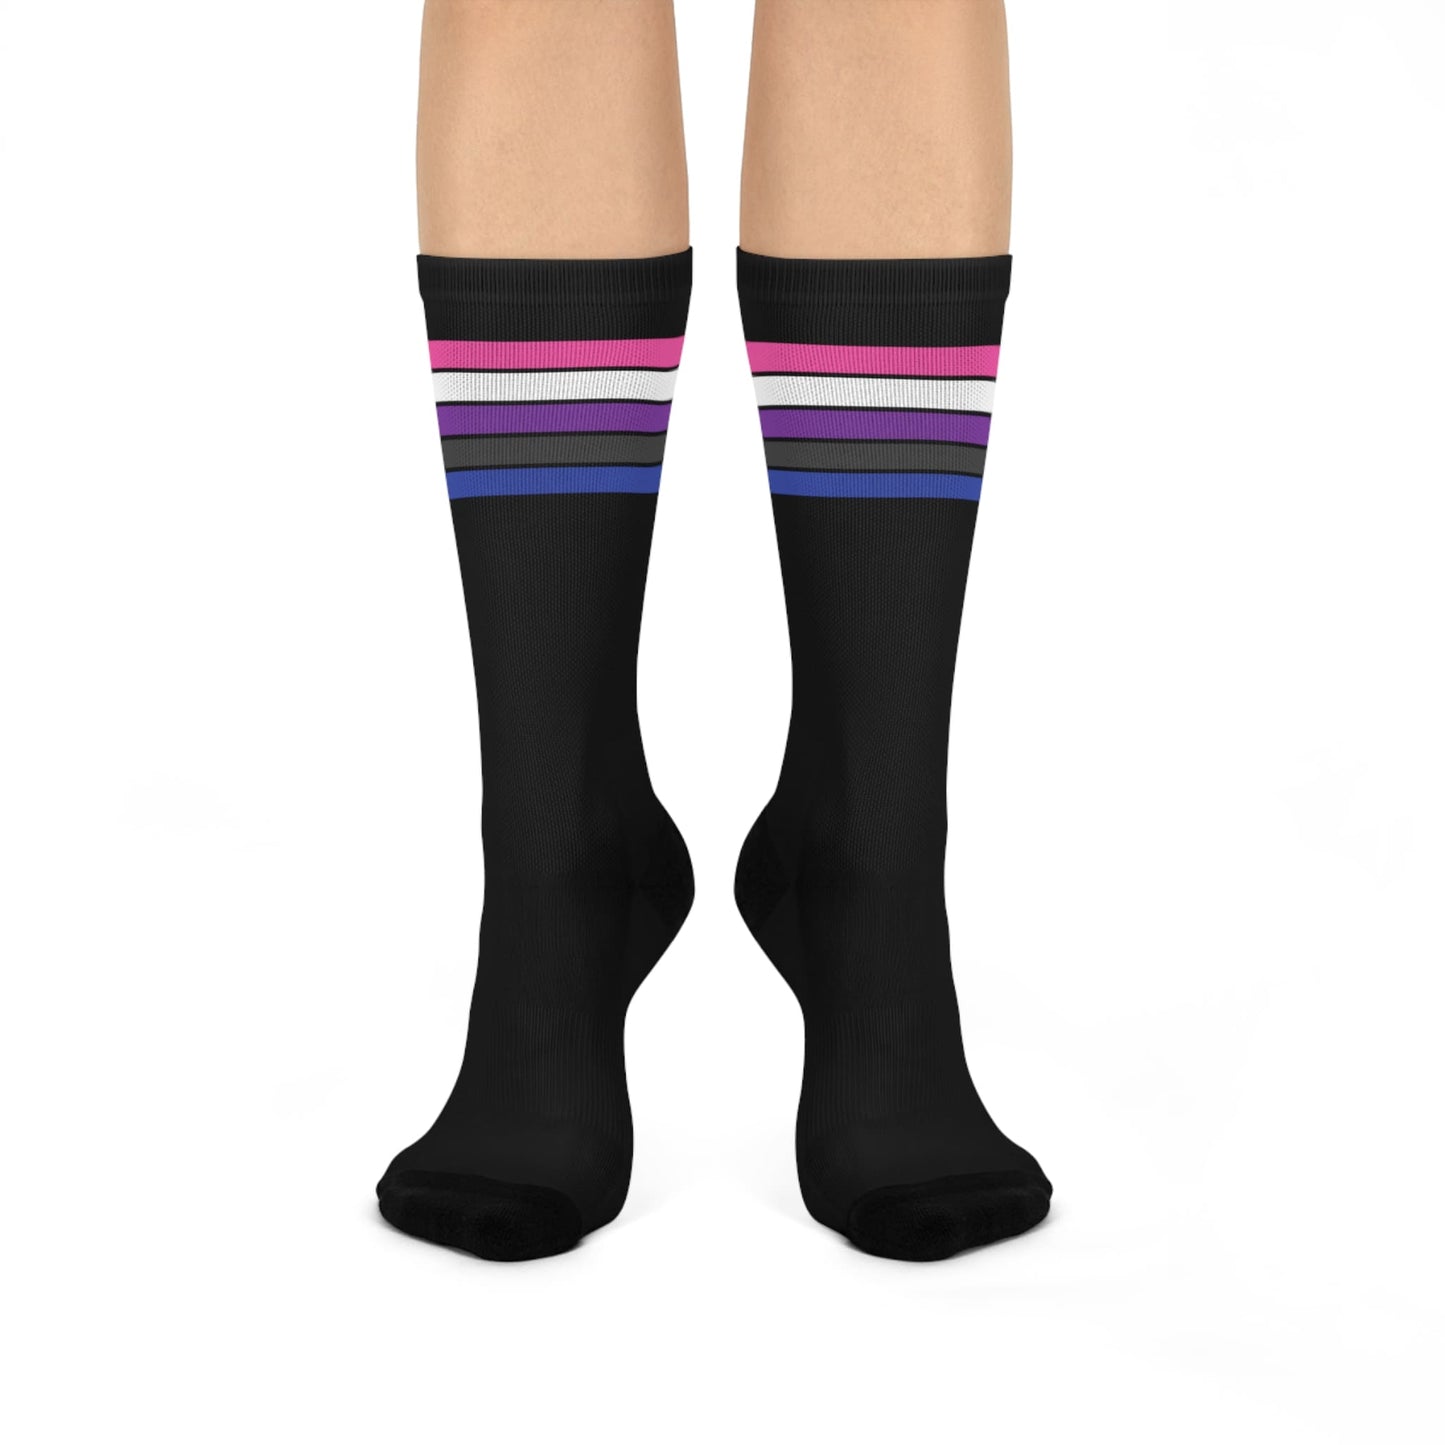 genderfluid socks, gender fluid pride flag, front